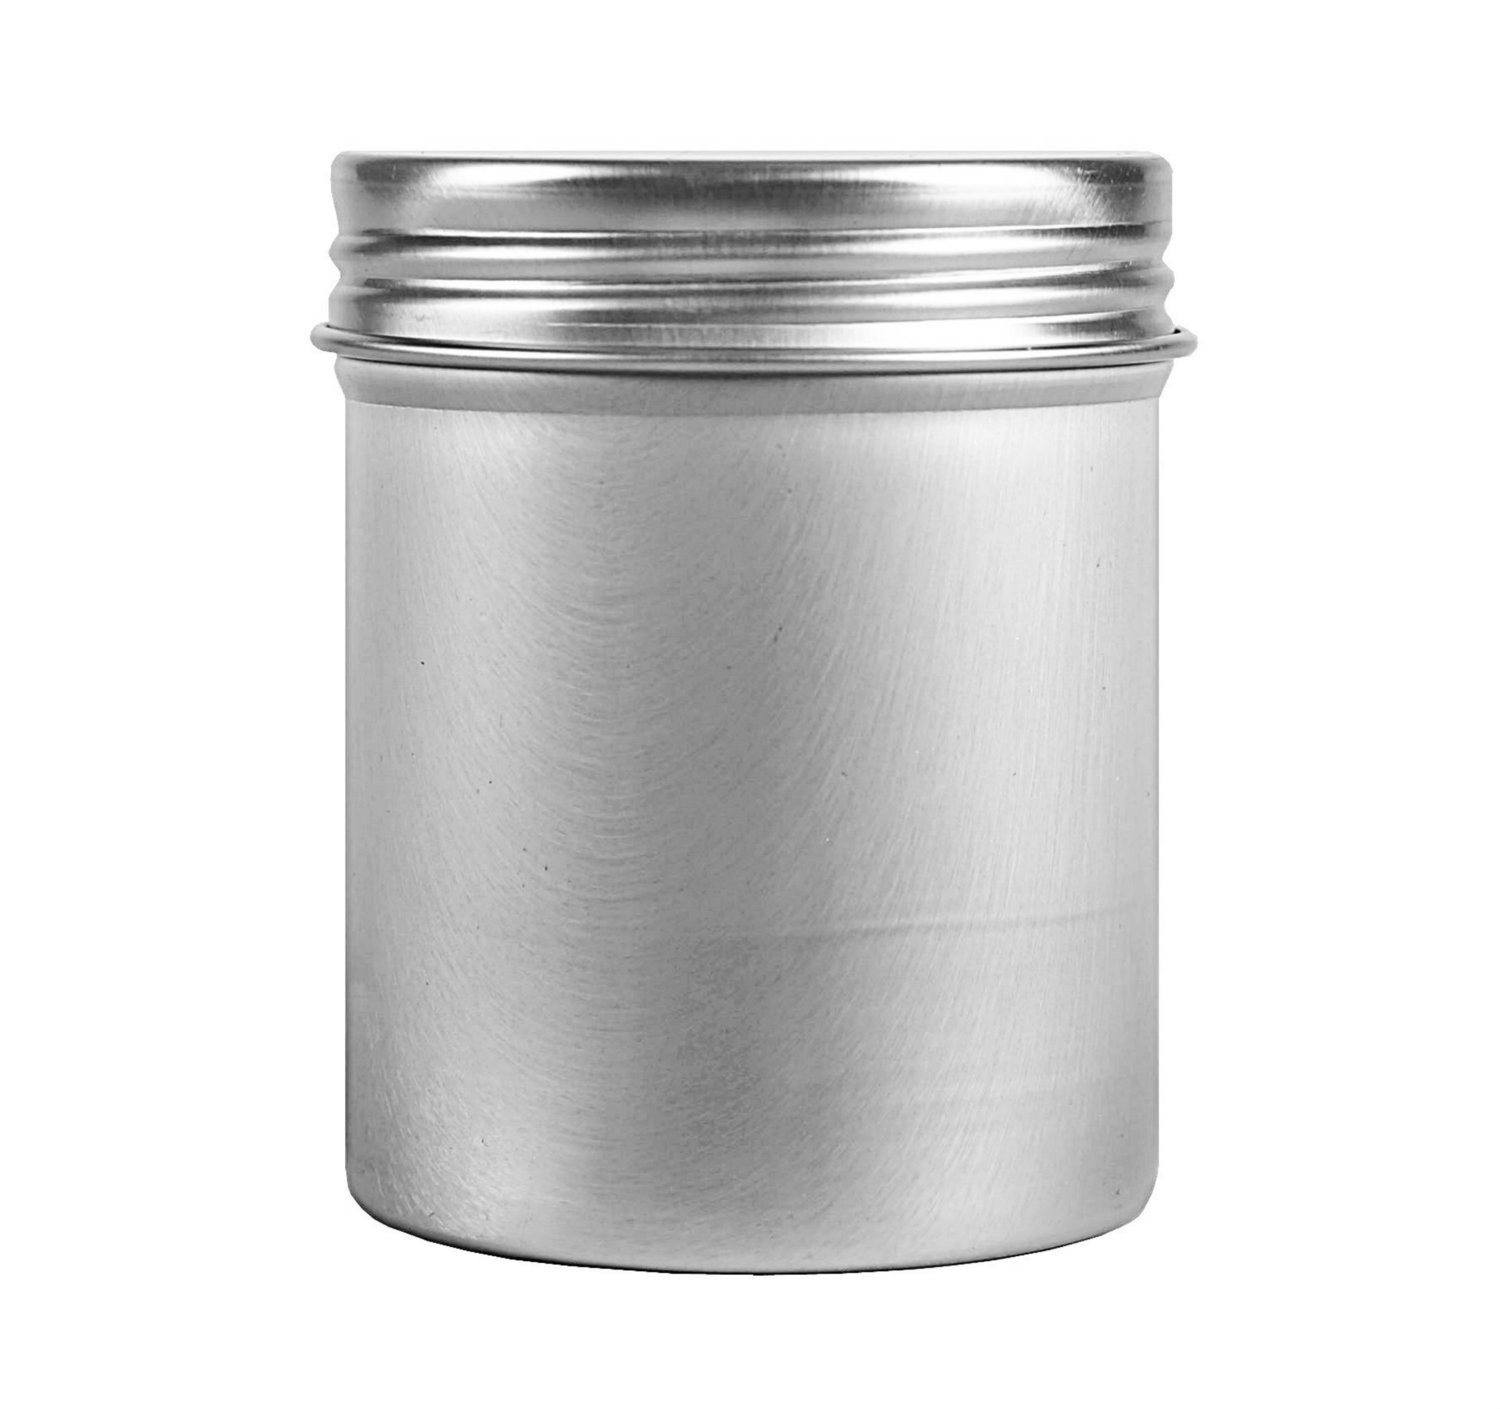 100g, Tall Aluminum Jar